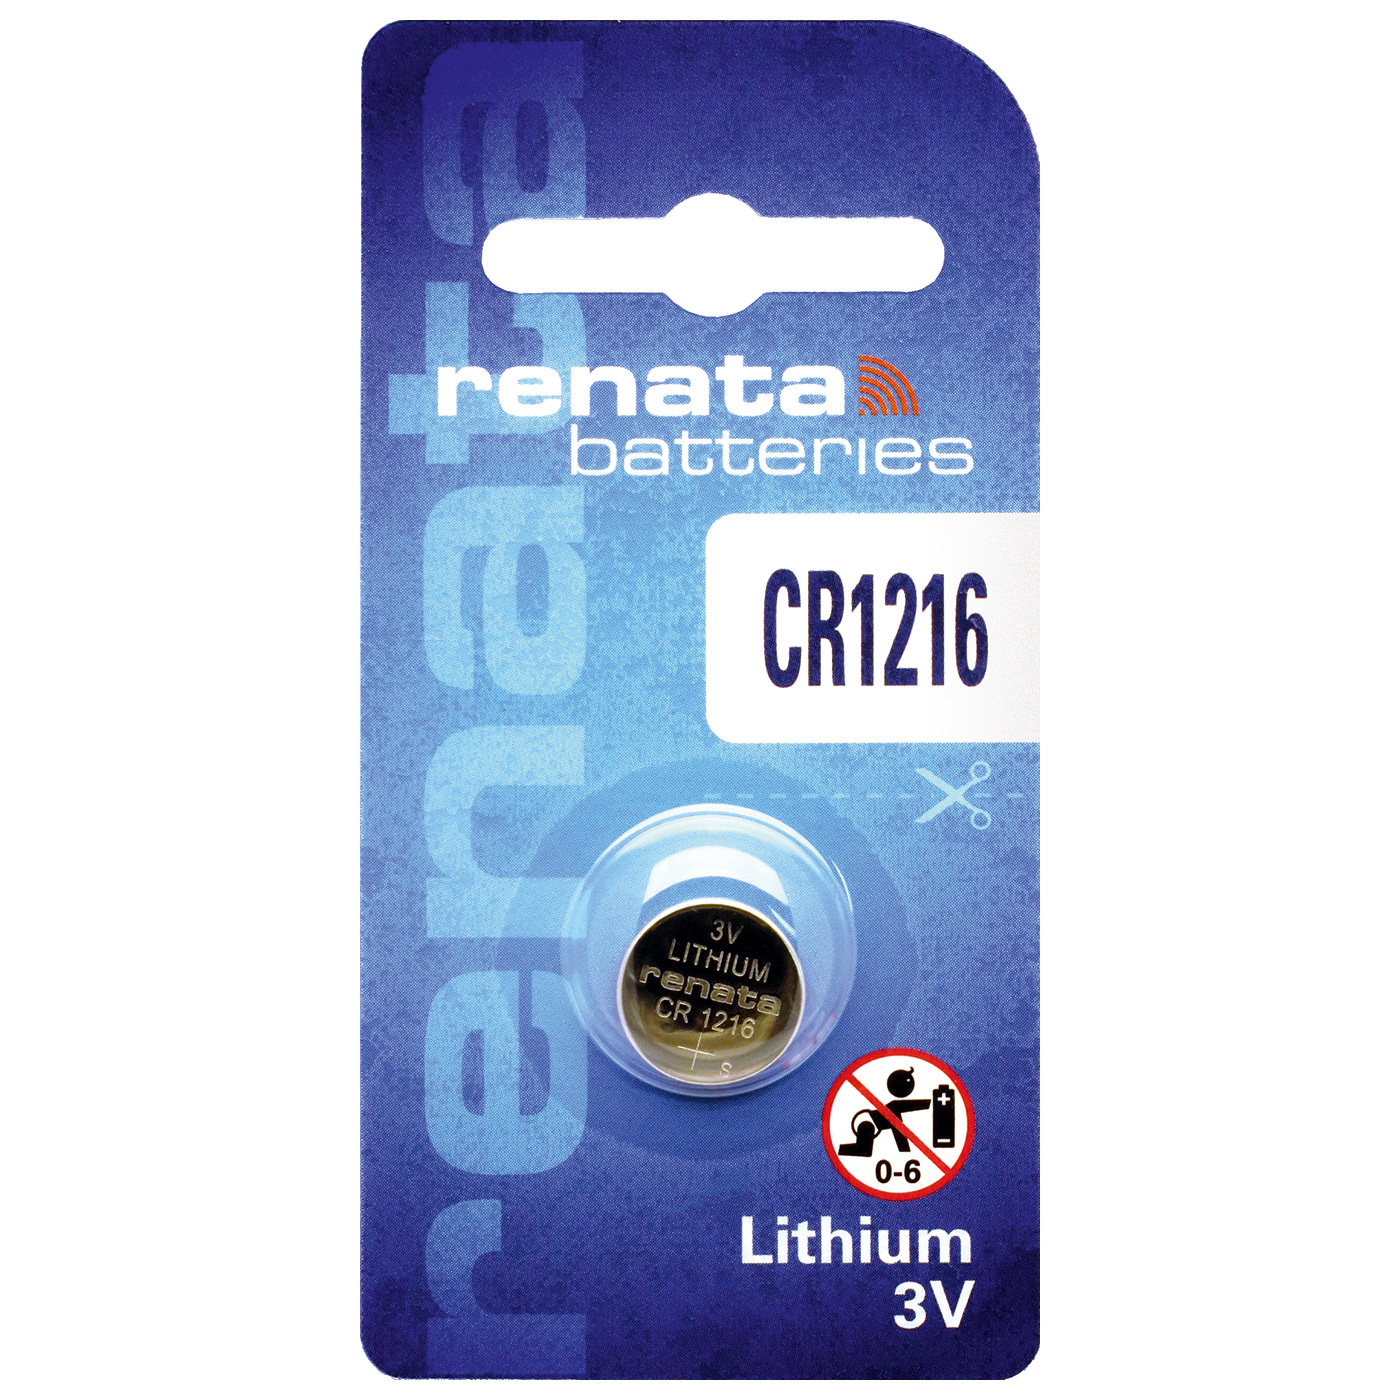 Renata CR 1216 Lithium